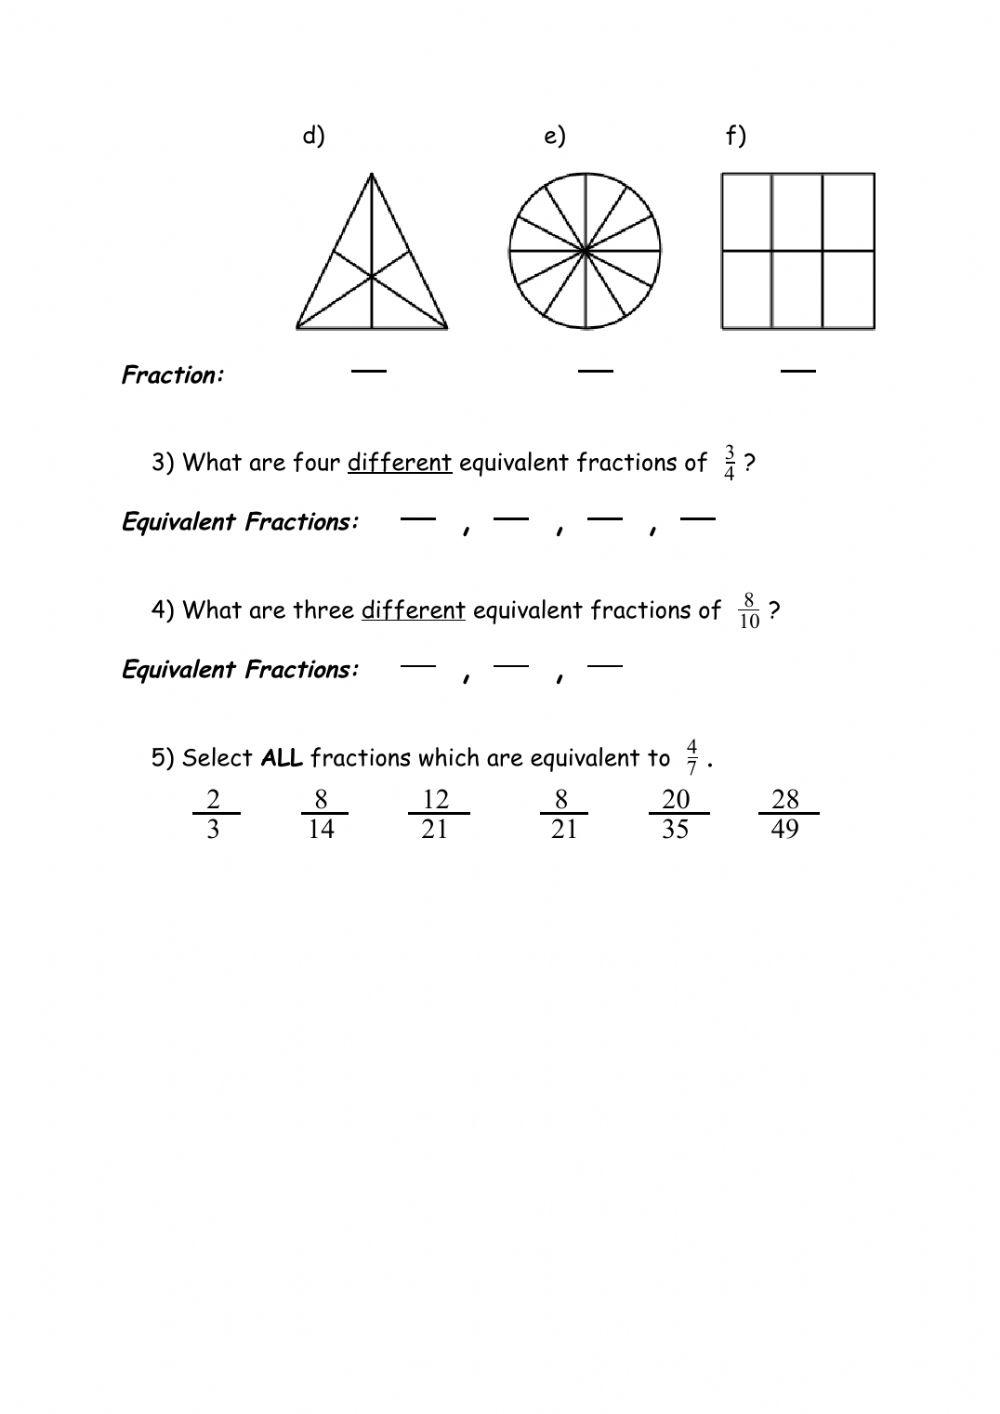 Equivalent Fractions Worksheet 1